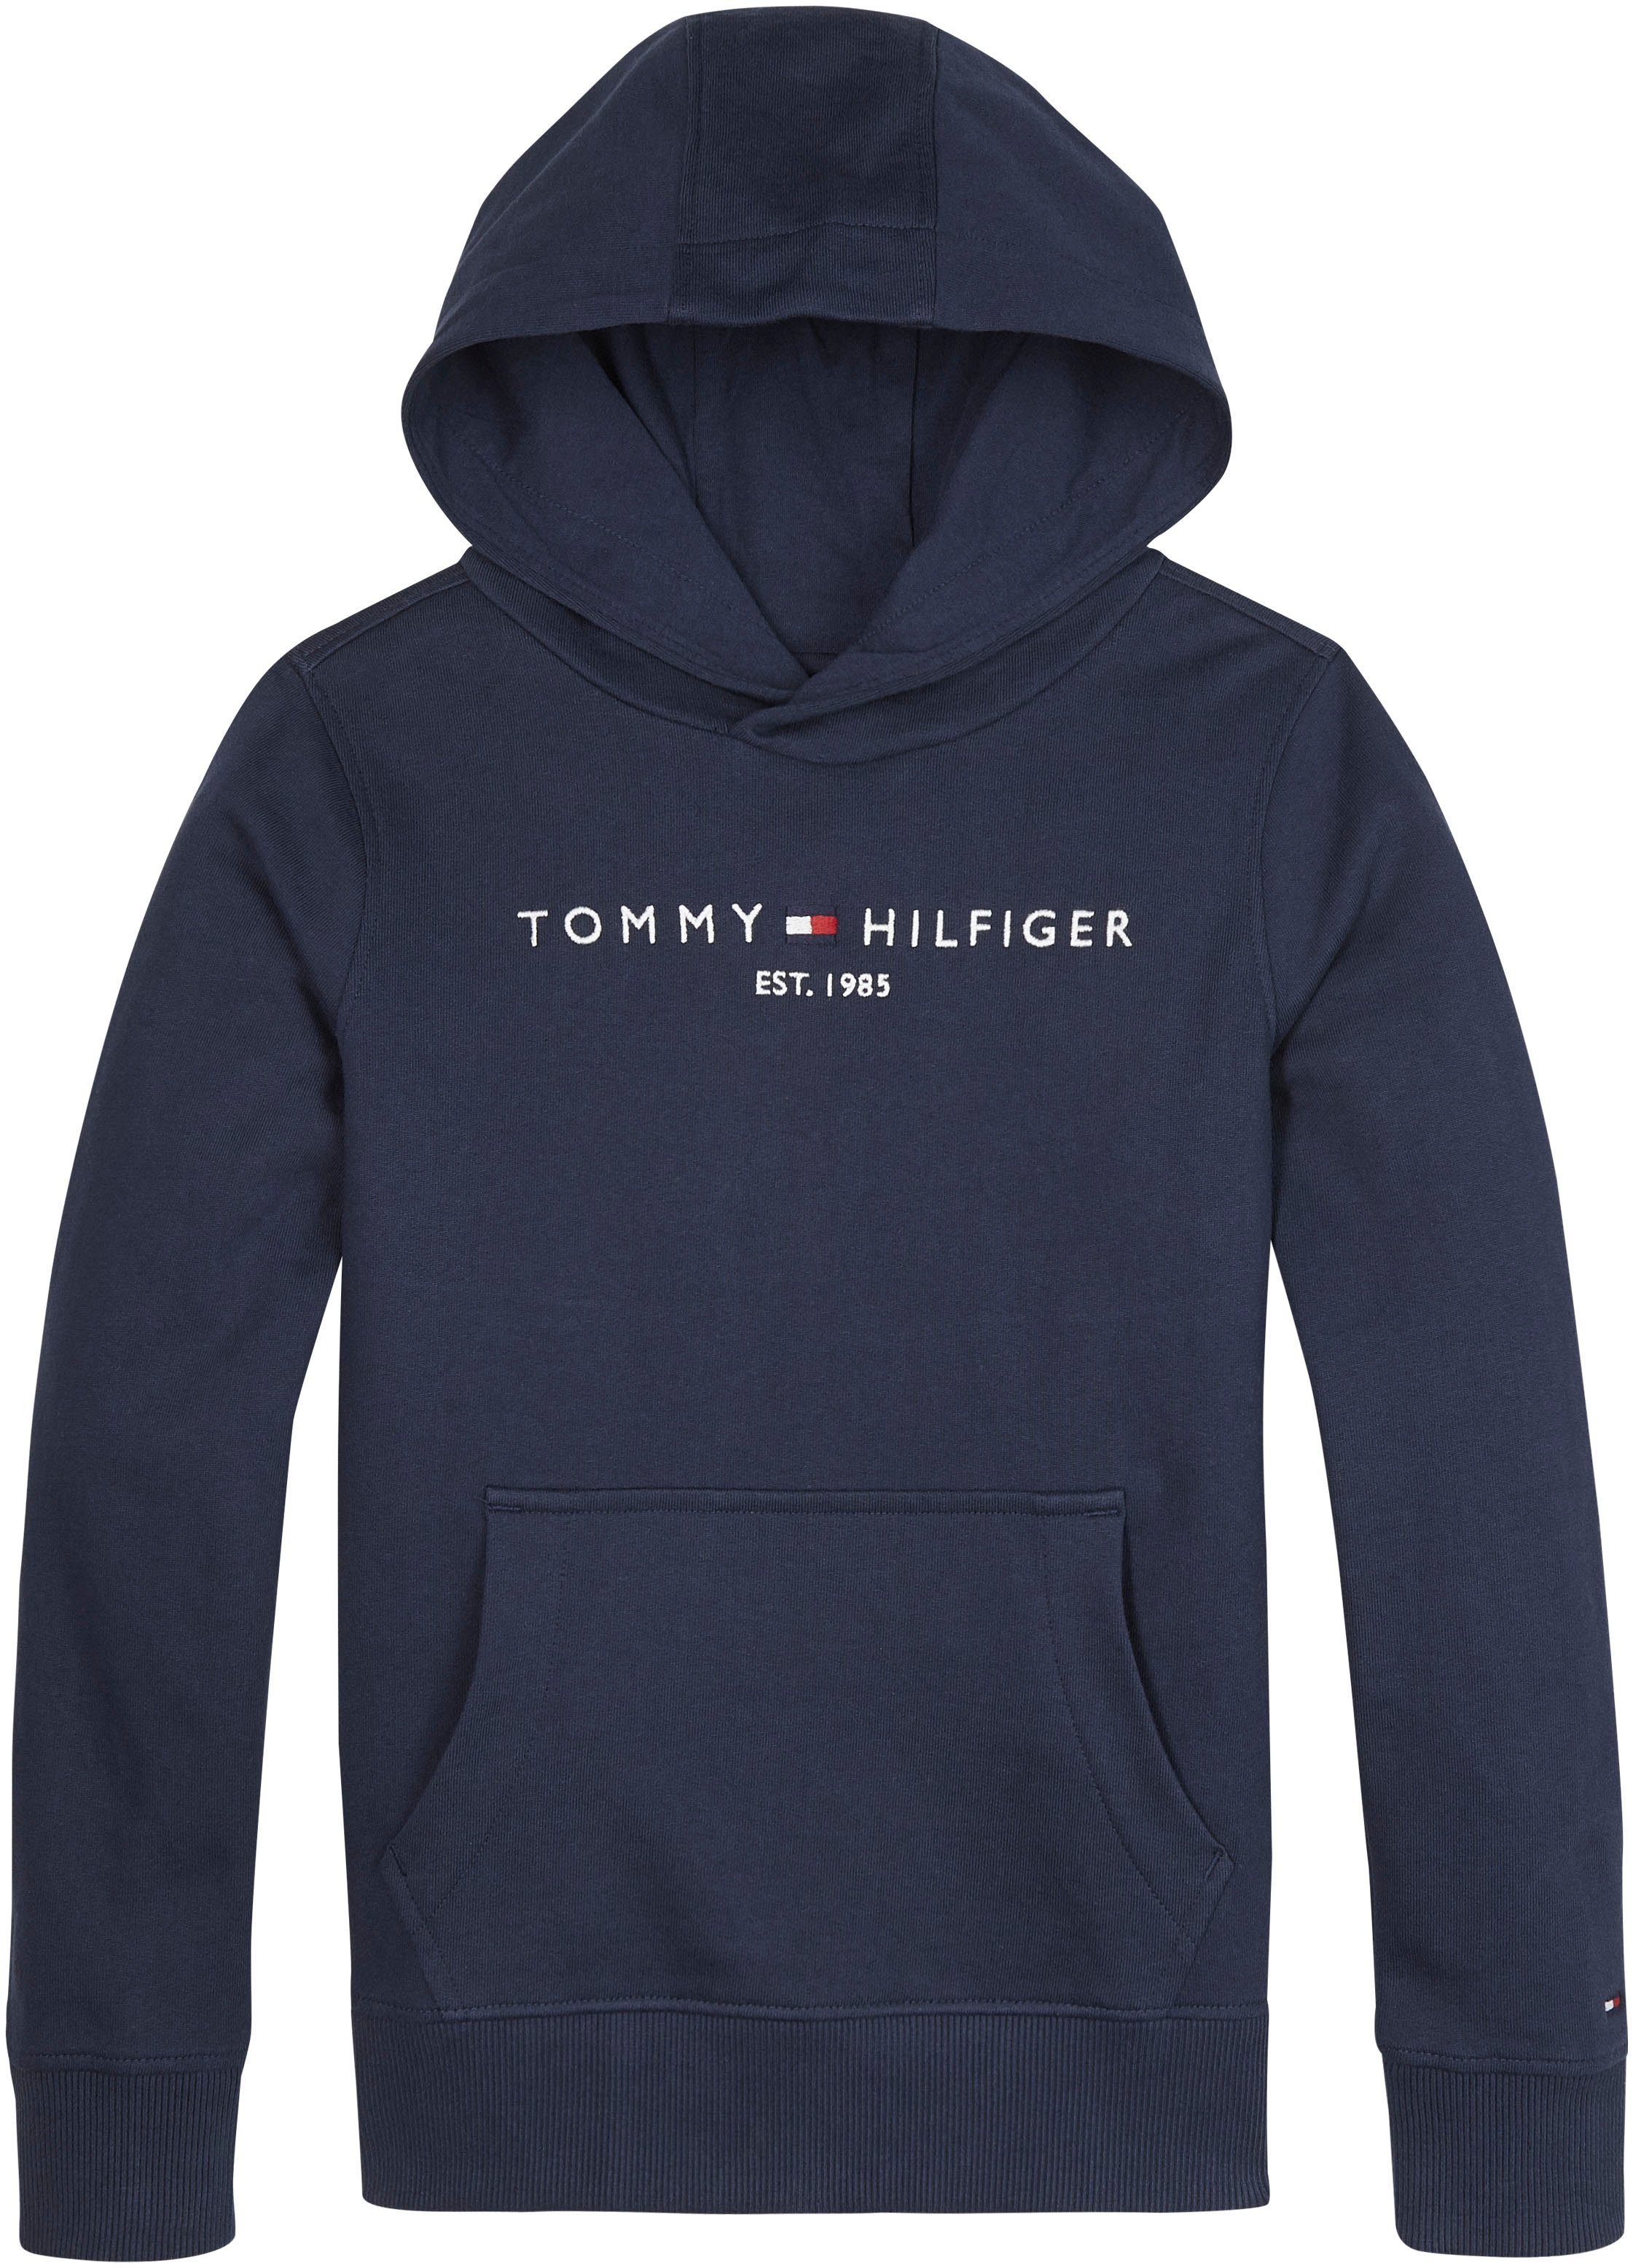 Kapuzensweatshirt Tommy Jungen und Hilfiger ESSENTIAL HOODIE für Mädchen